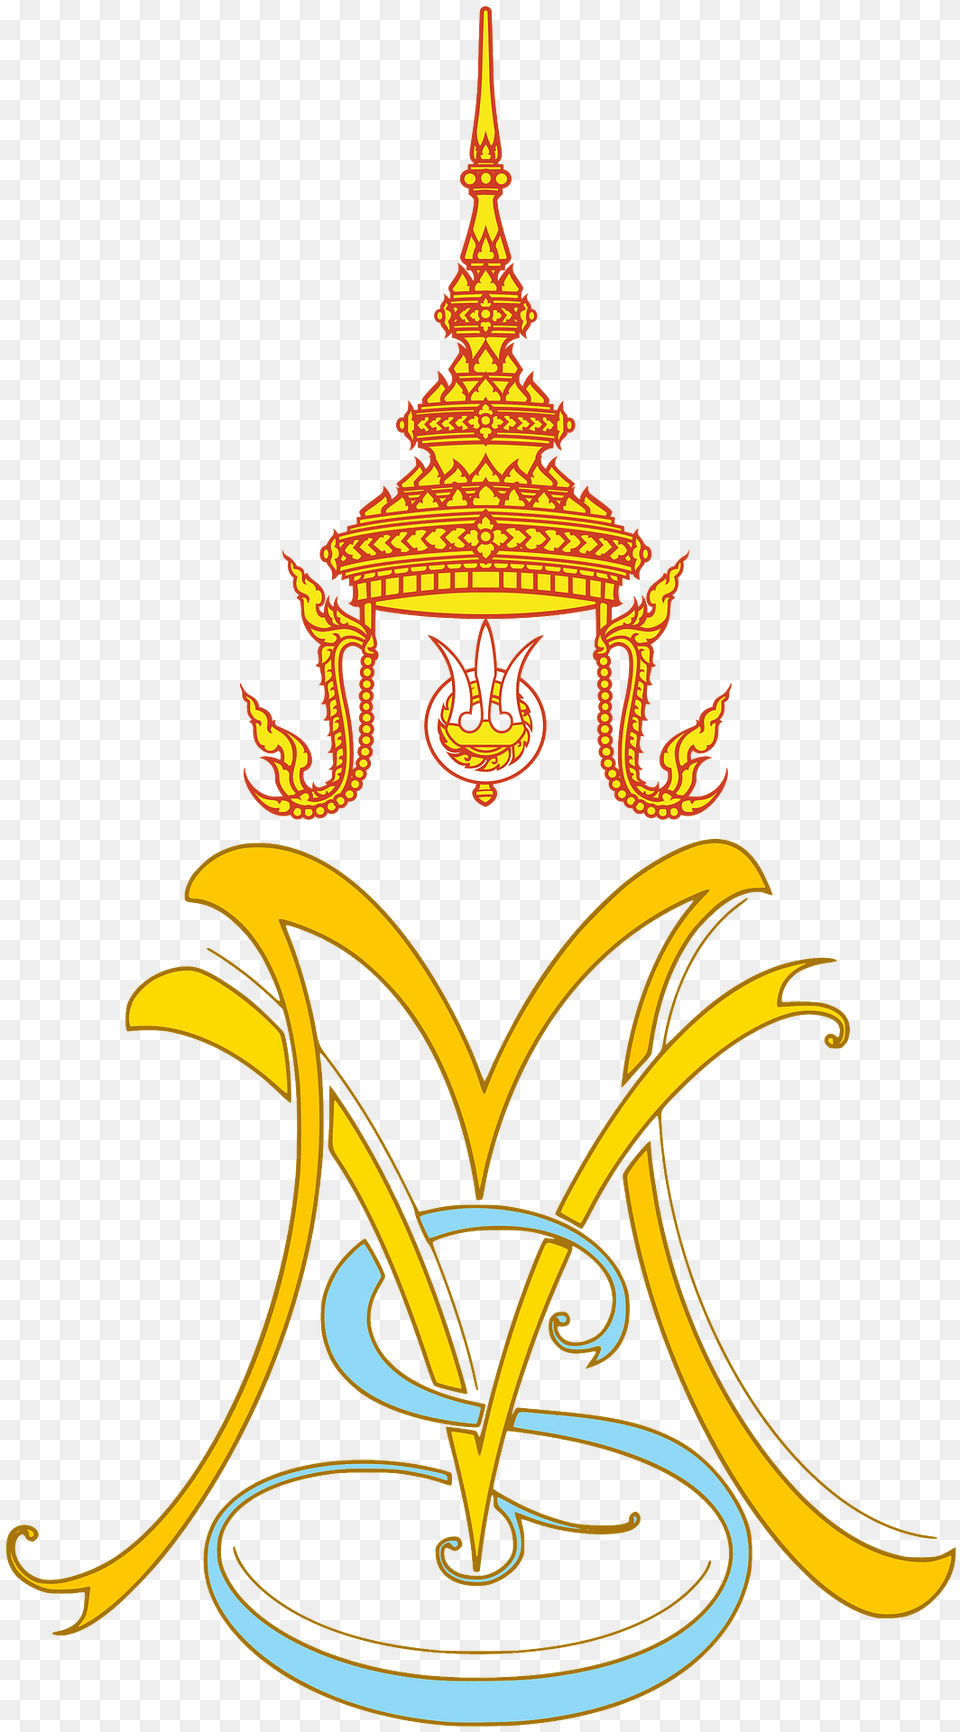 Royal Monogram Of Crown Prince Maha Vajiralongkorn And Sineenart Clipart, Emblem, Symbol, Logo Free Png